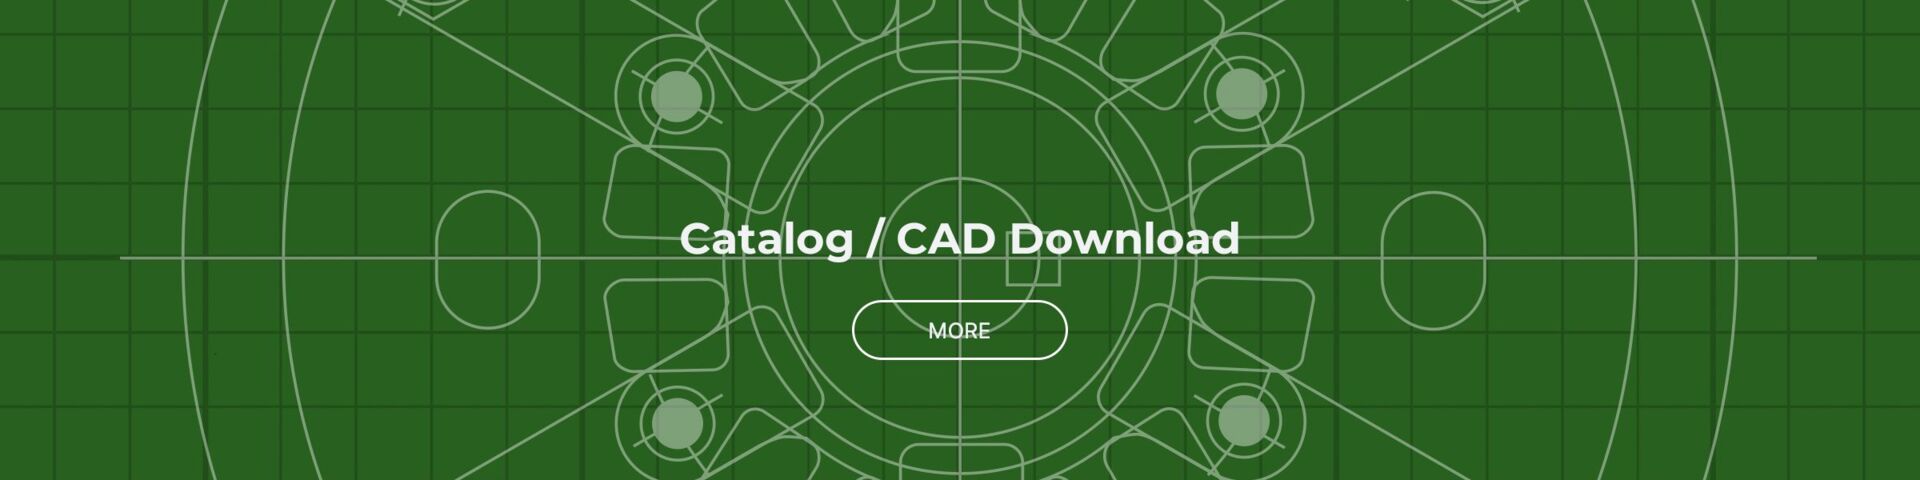 Catalog/CAD Download